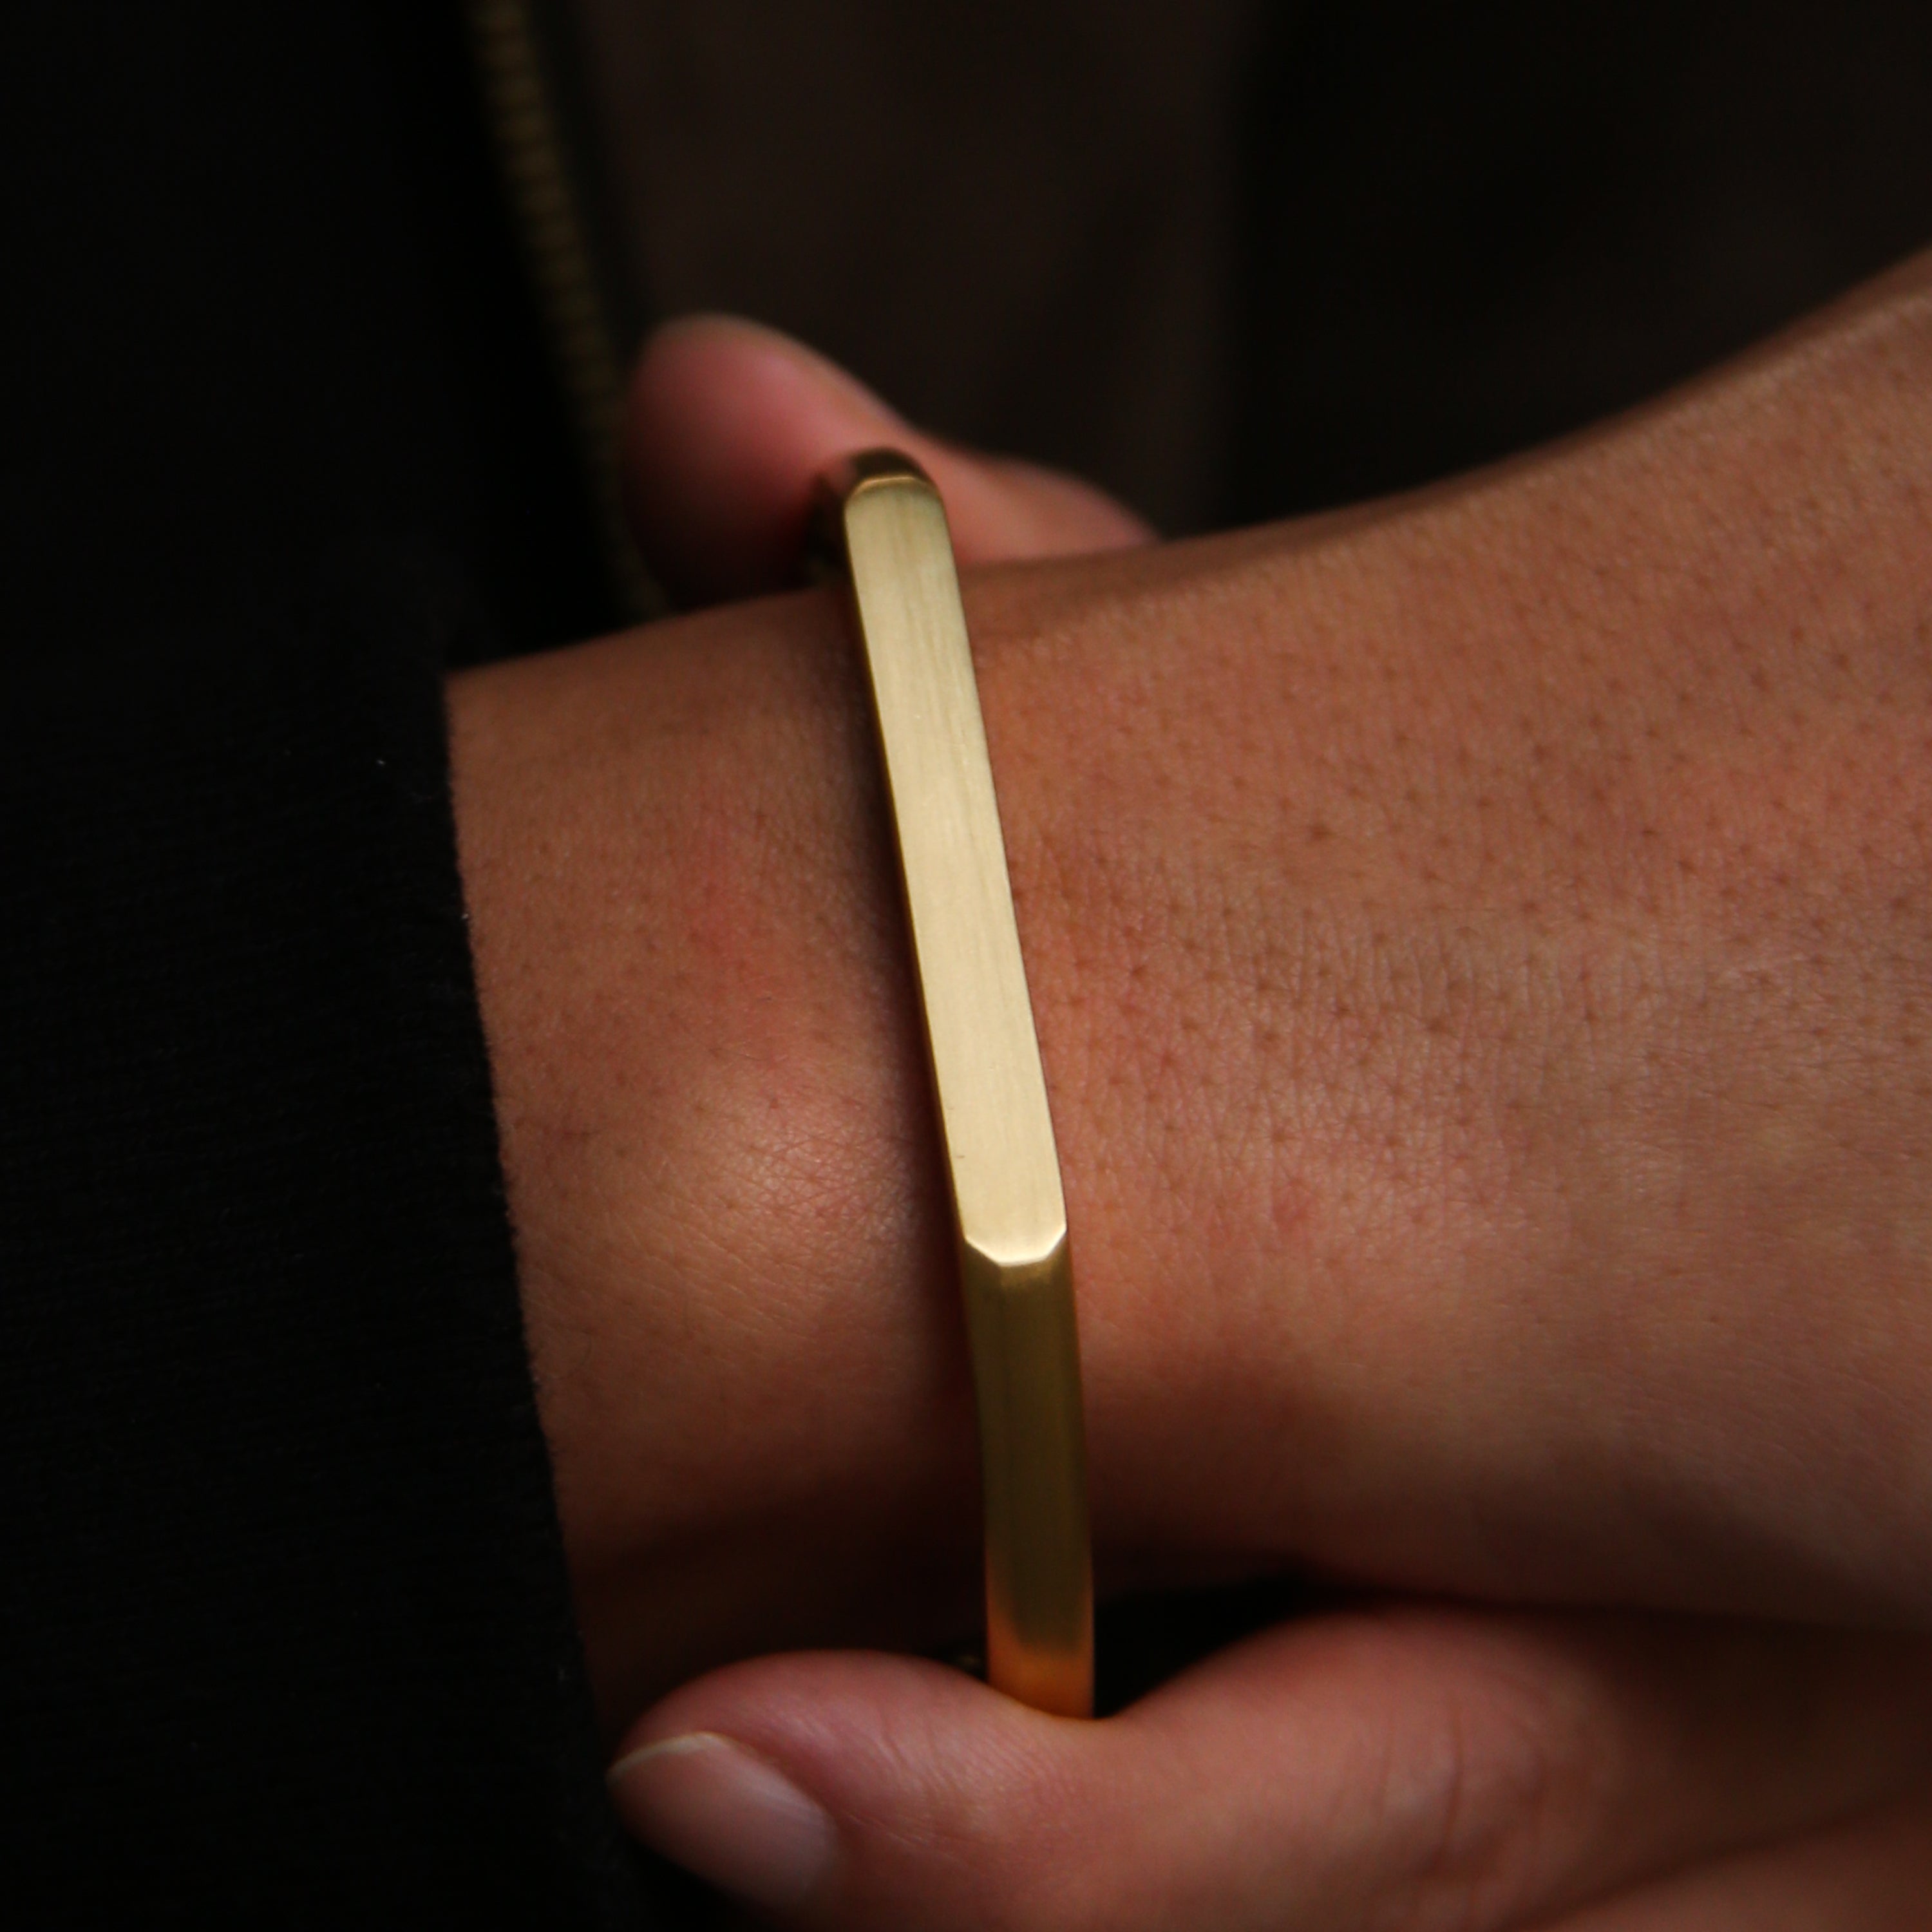 Omega 18K Gold Engraved Cuff Bracelet | Engraved Gold Bracelet for Men M ( 17.9 - 19.05 cm )